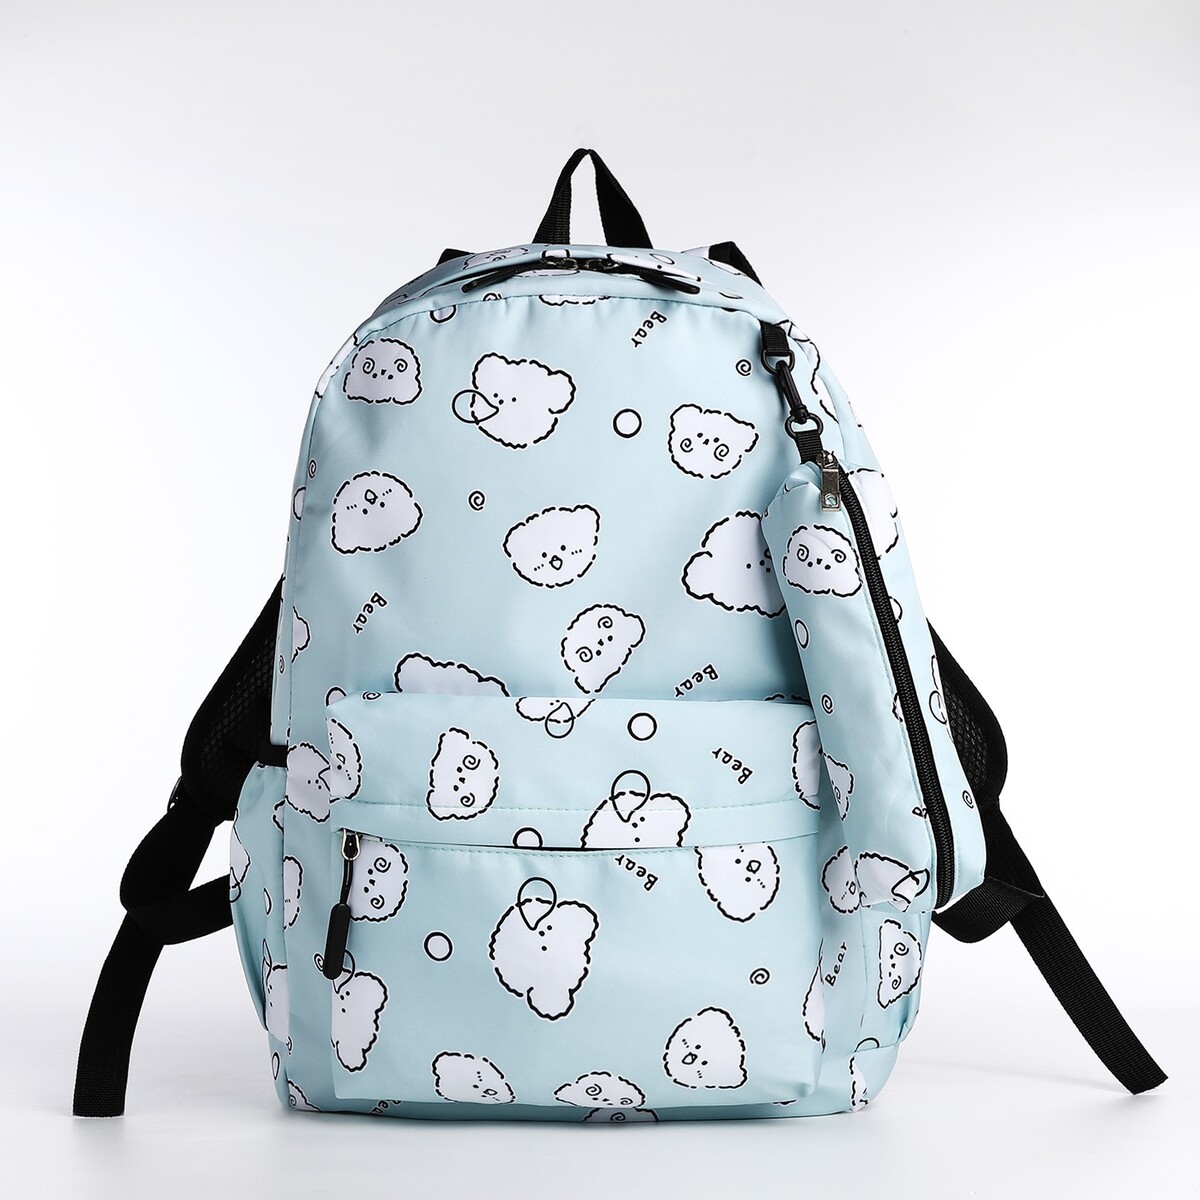 Набор рюкзак школьный из текстиля на молнии, 3 кармана, пенал, цвет бирюзовый рюкзак mad wave lane m1126 04 0 16w бирюзовый